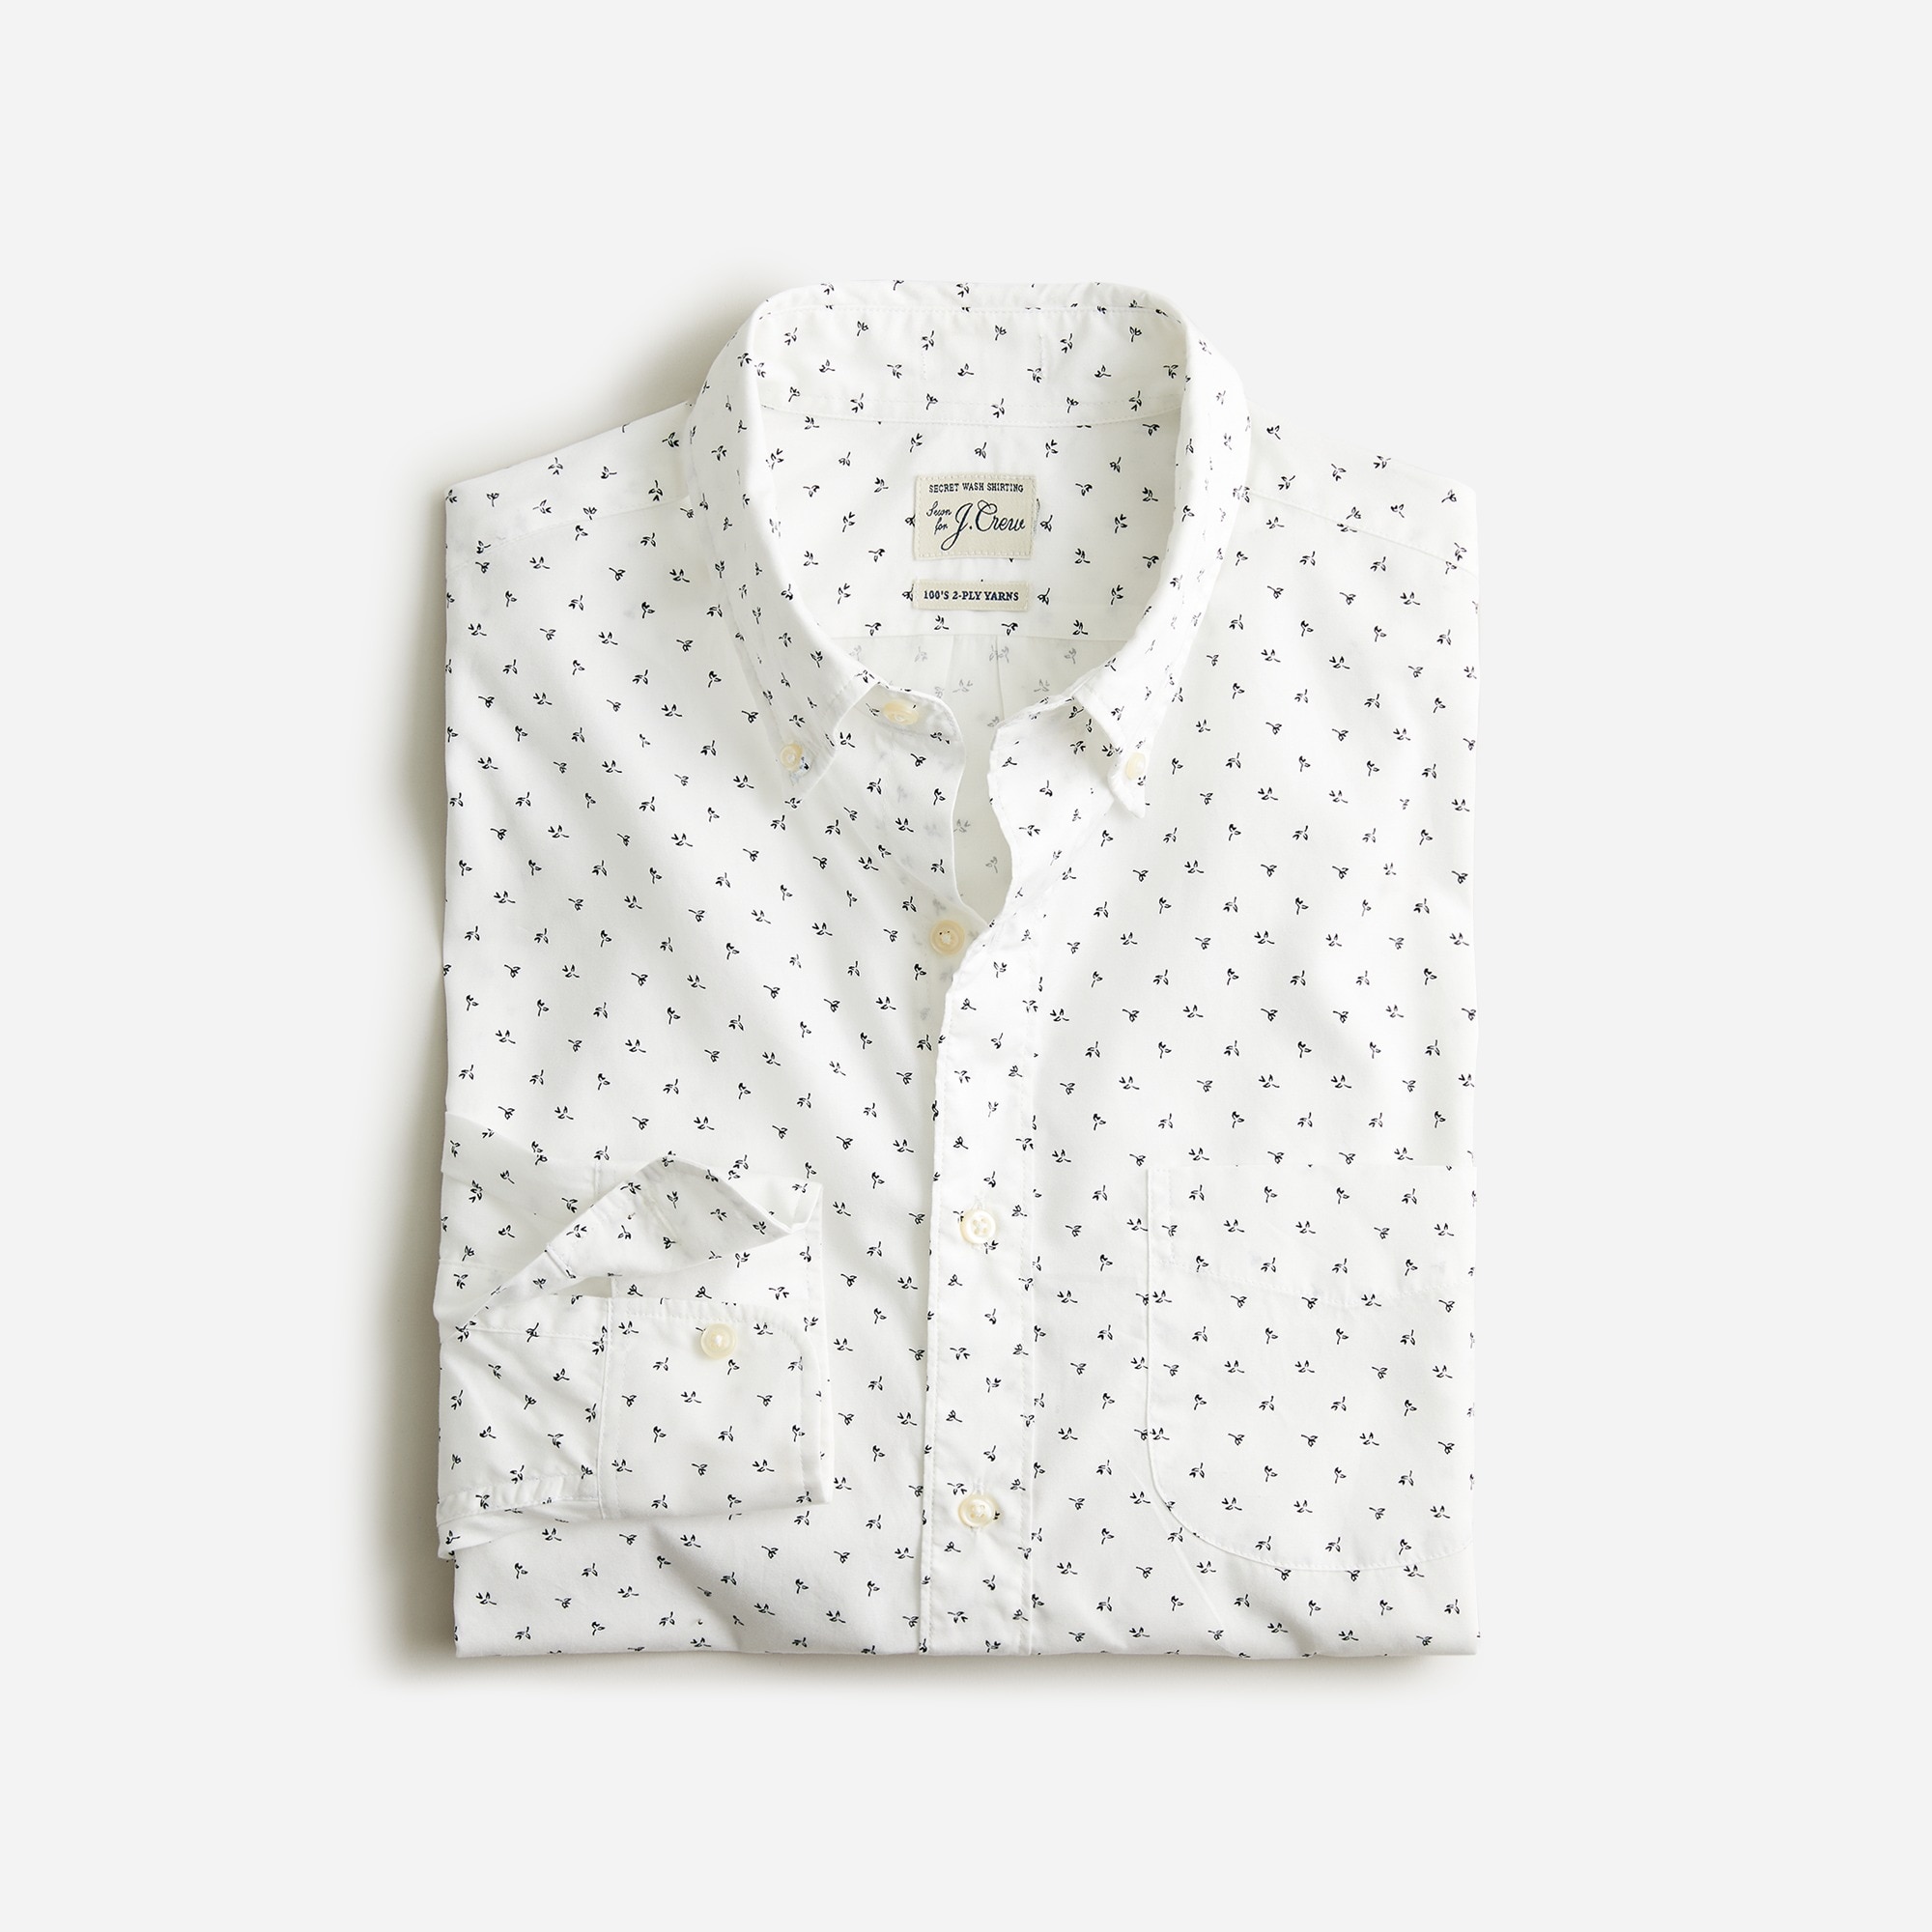  Slim Untucked Secret Wash cotton poplin shirt